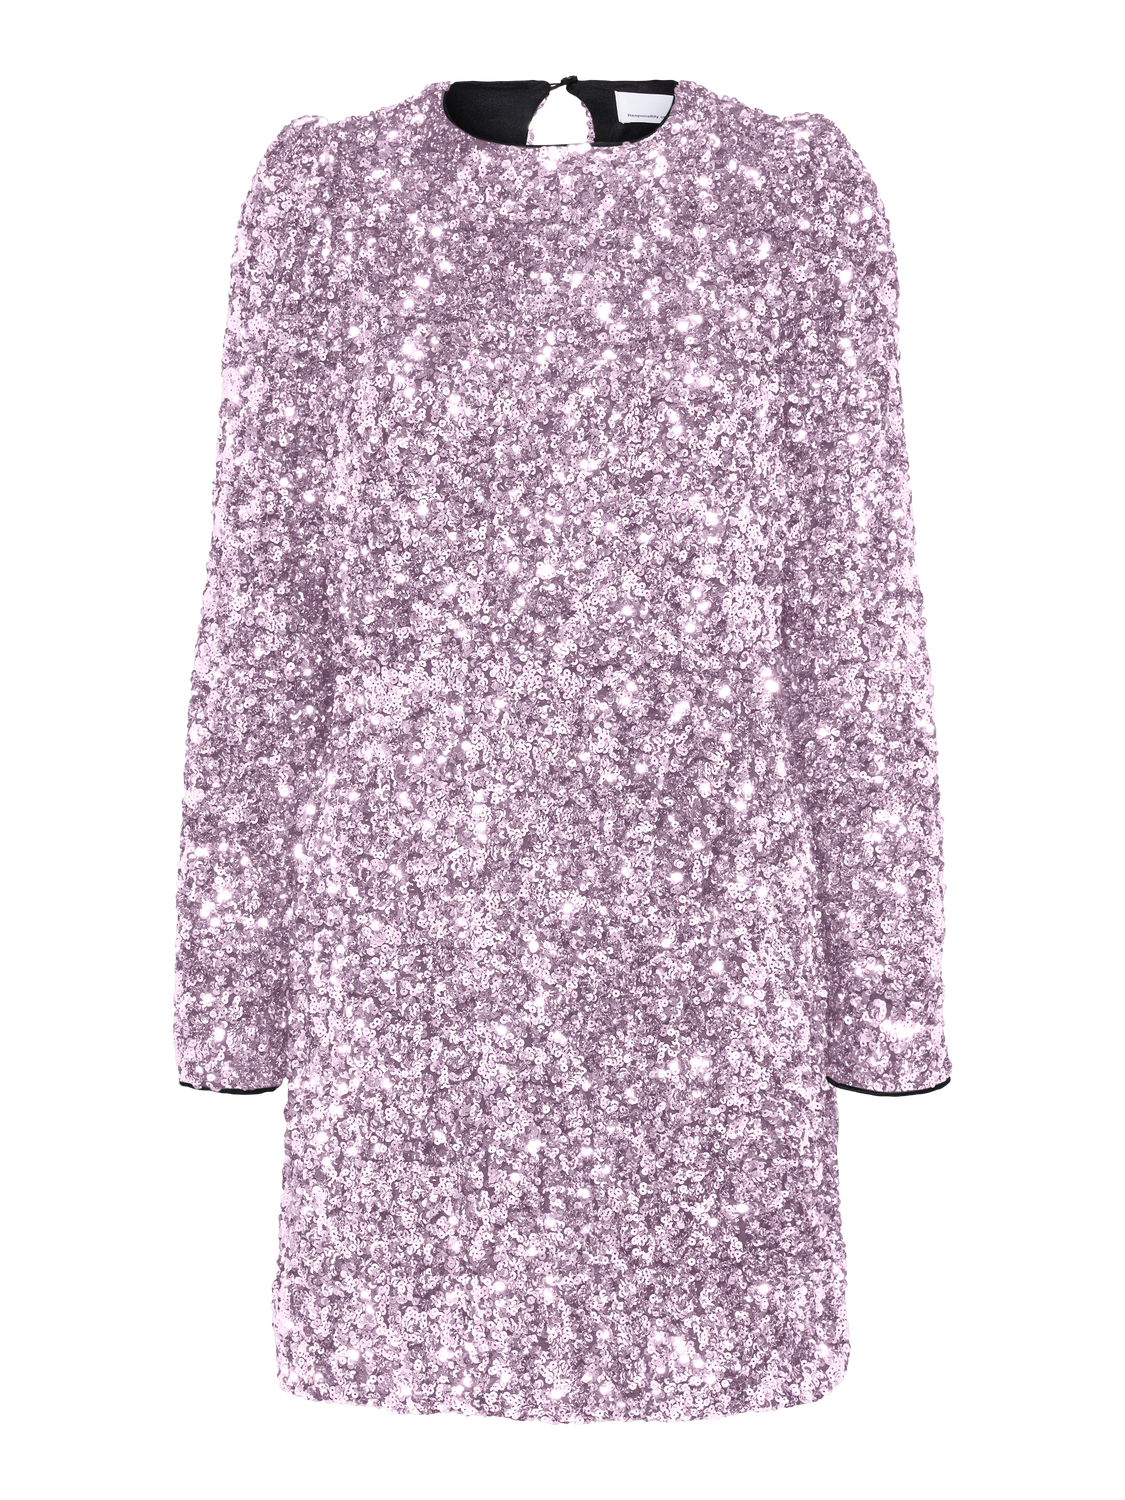 SELECTED FEMME - COLYN KJOLE - Pink Lavender